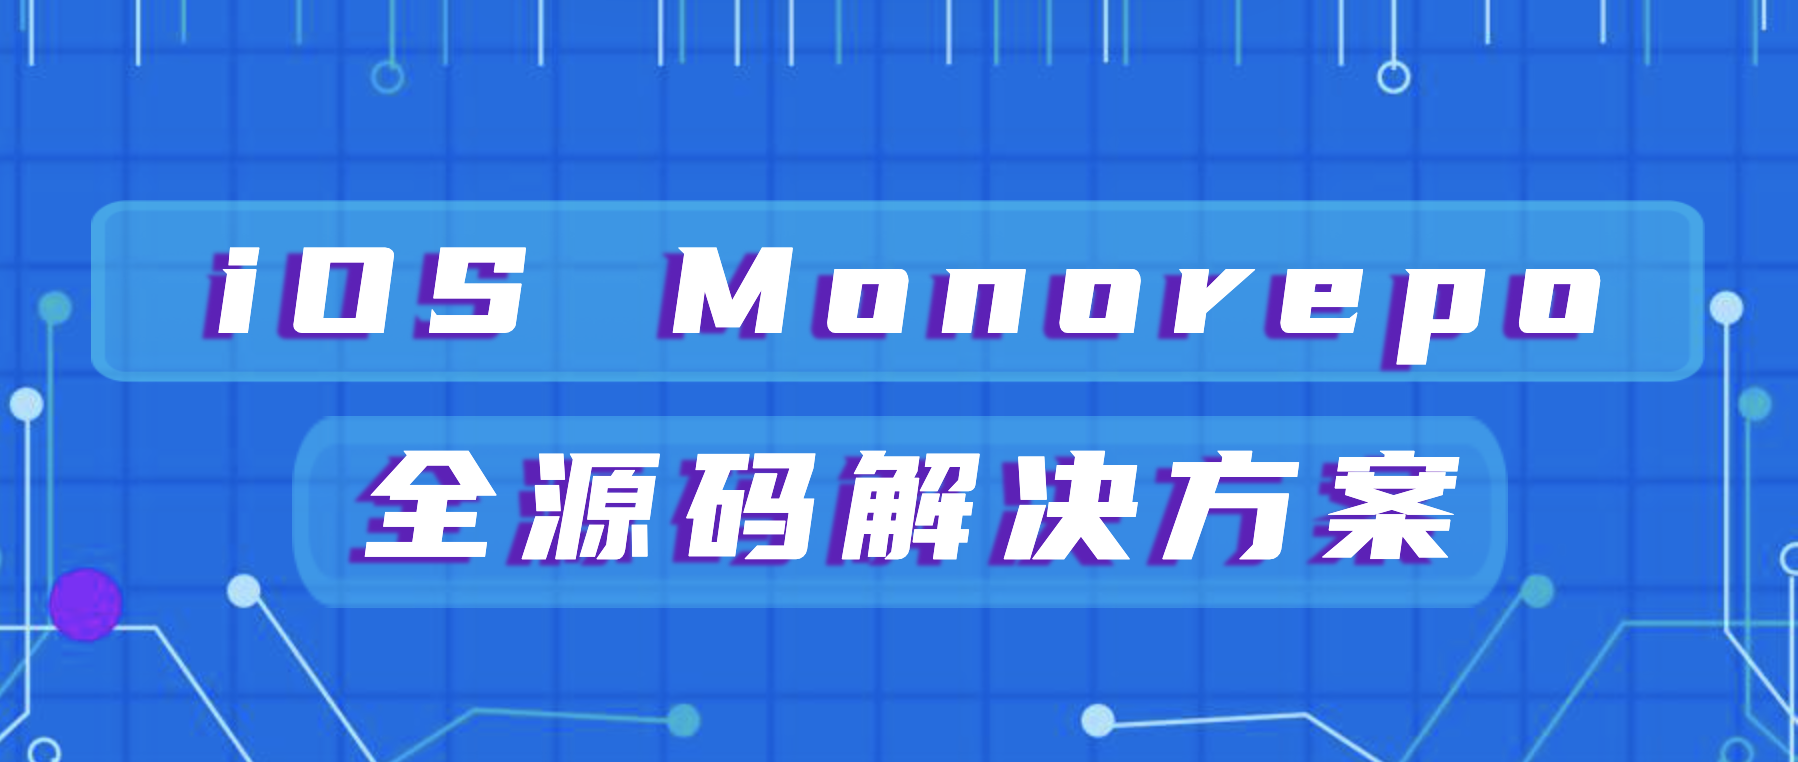 iOS Monorepo 全源码解决方案